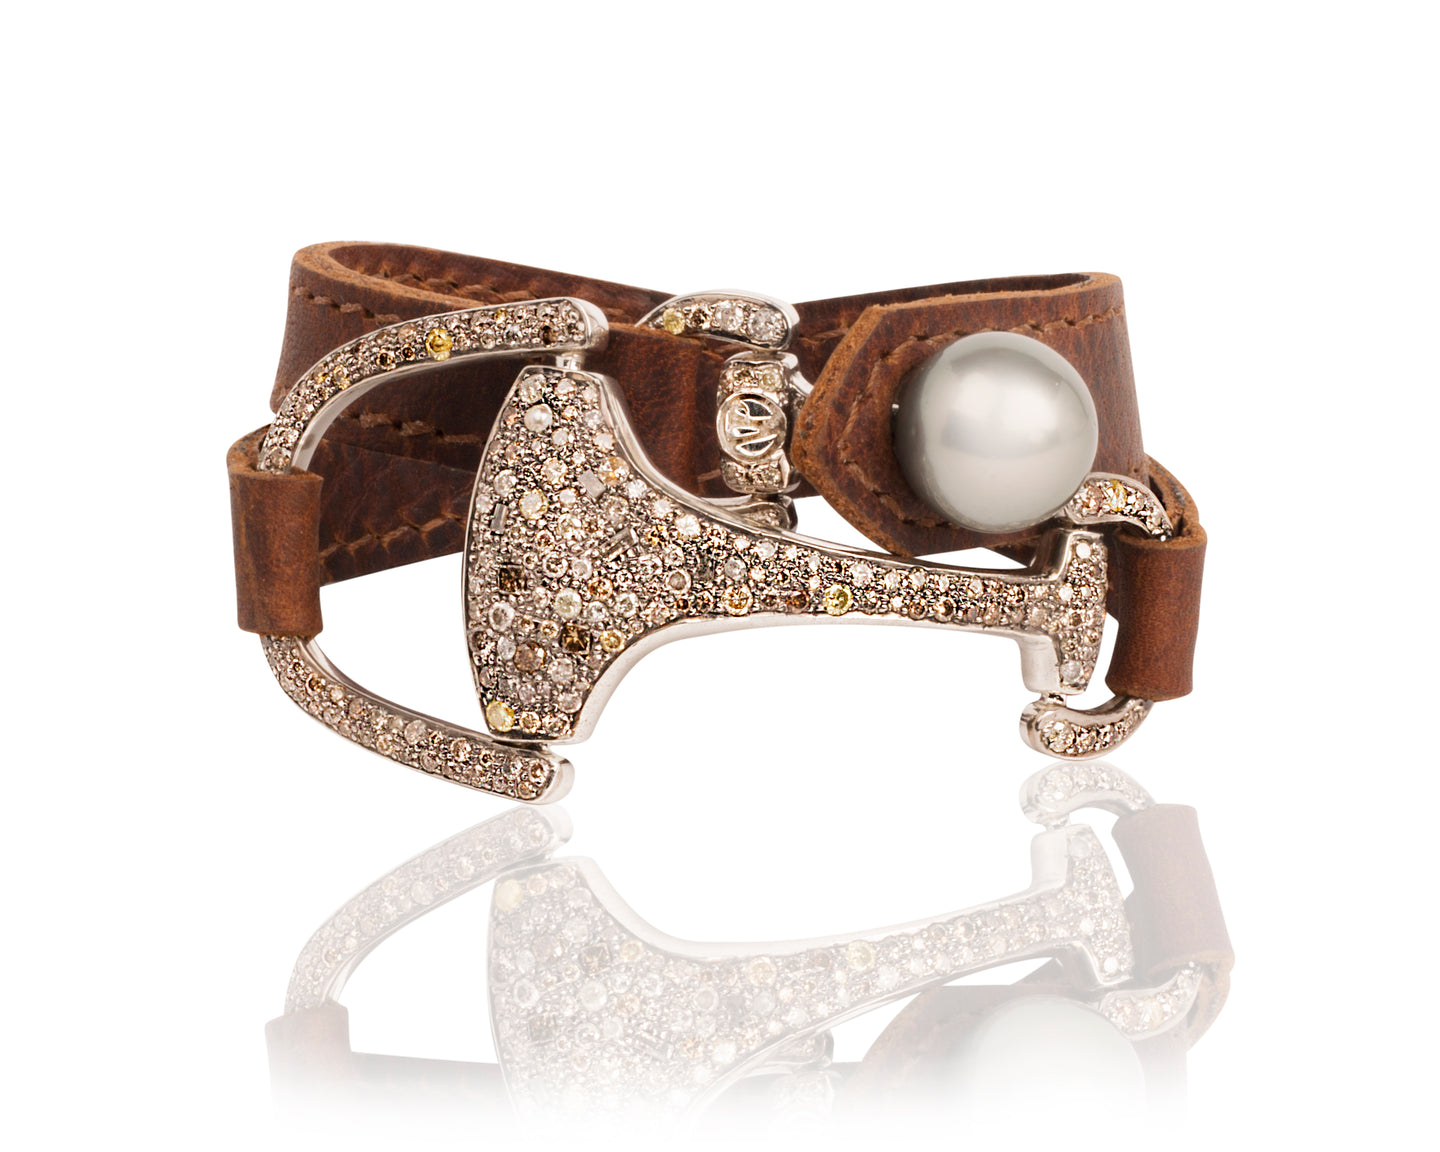 Mushroom Cord Bracelet and Necklace  Hortense Jewelry: Paris Savoir-Faire  x LA Glamour